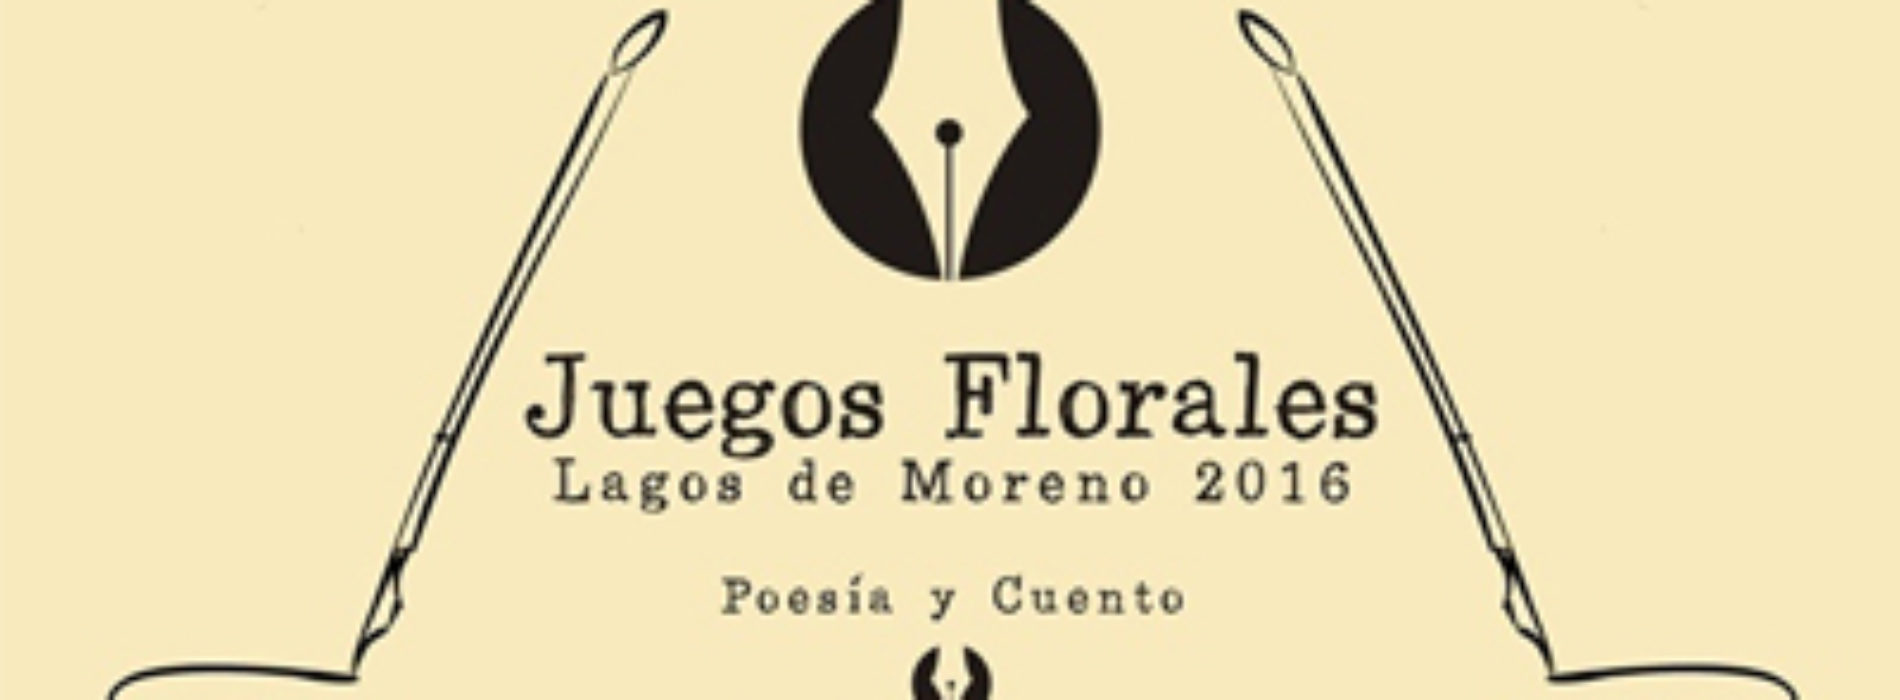 Este 15 de julio, fecha límite para participar en el certamen de poesía y cuento “Juegos Florales 2016”